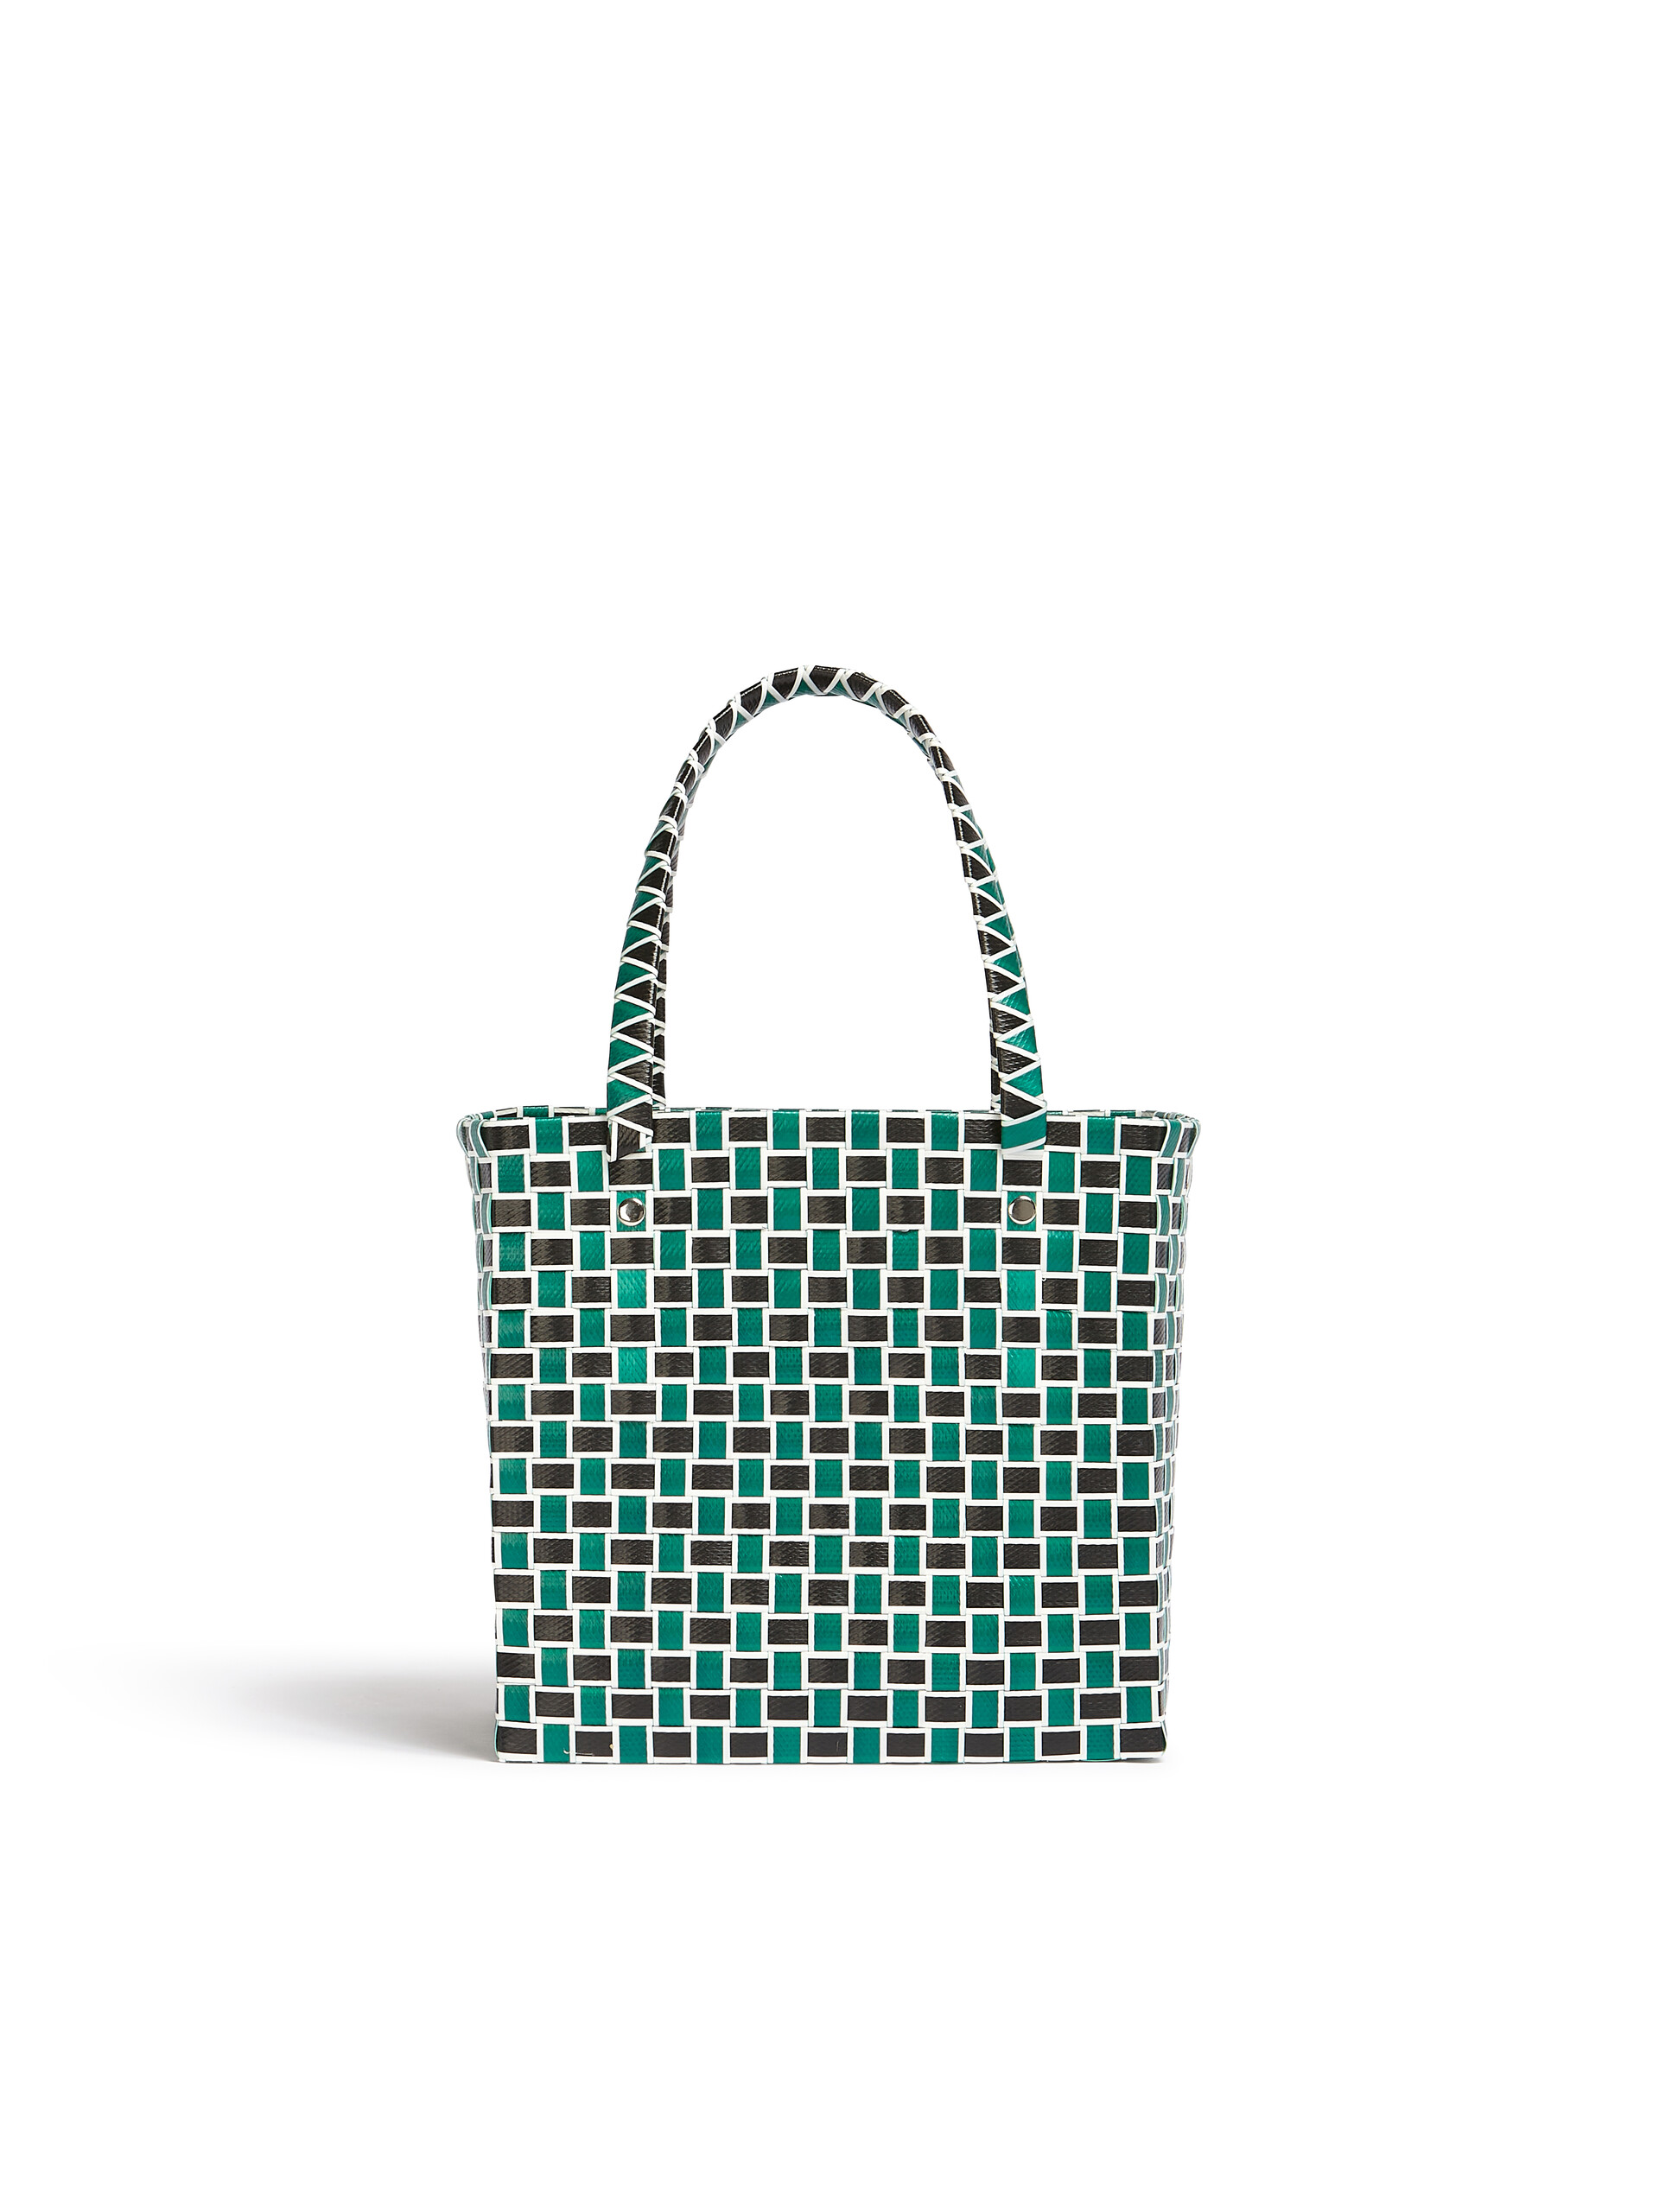 MARNI MARKET FLOWER MINI BASKET bag in green butterfly motif - Bags - Image 3